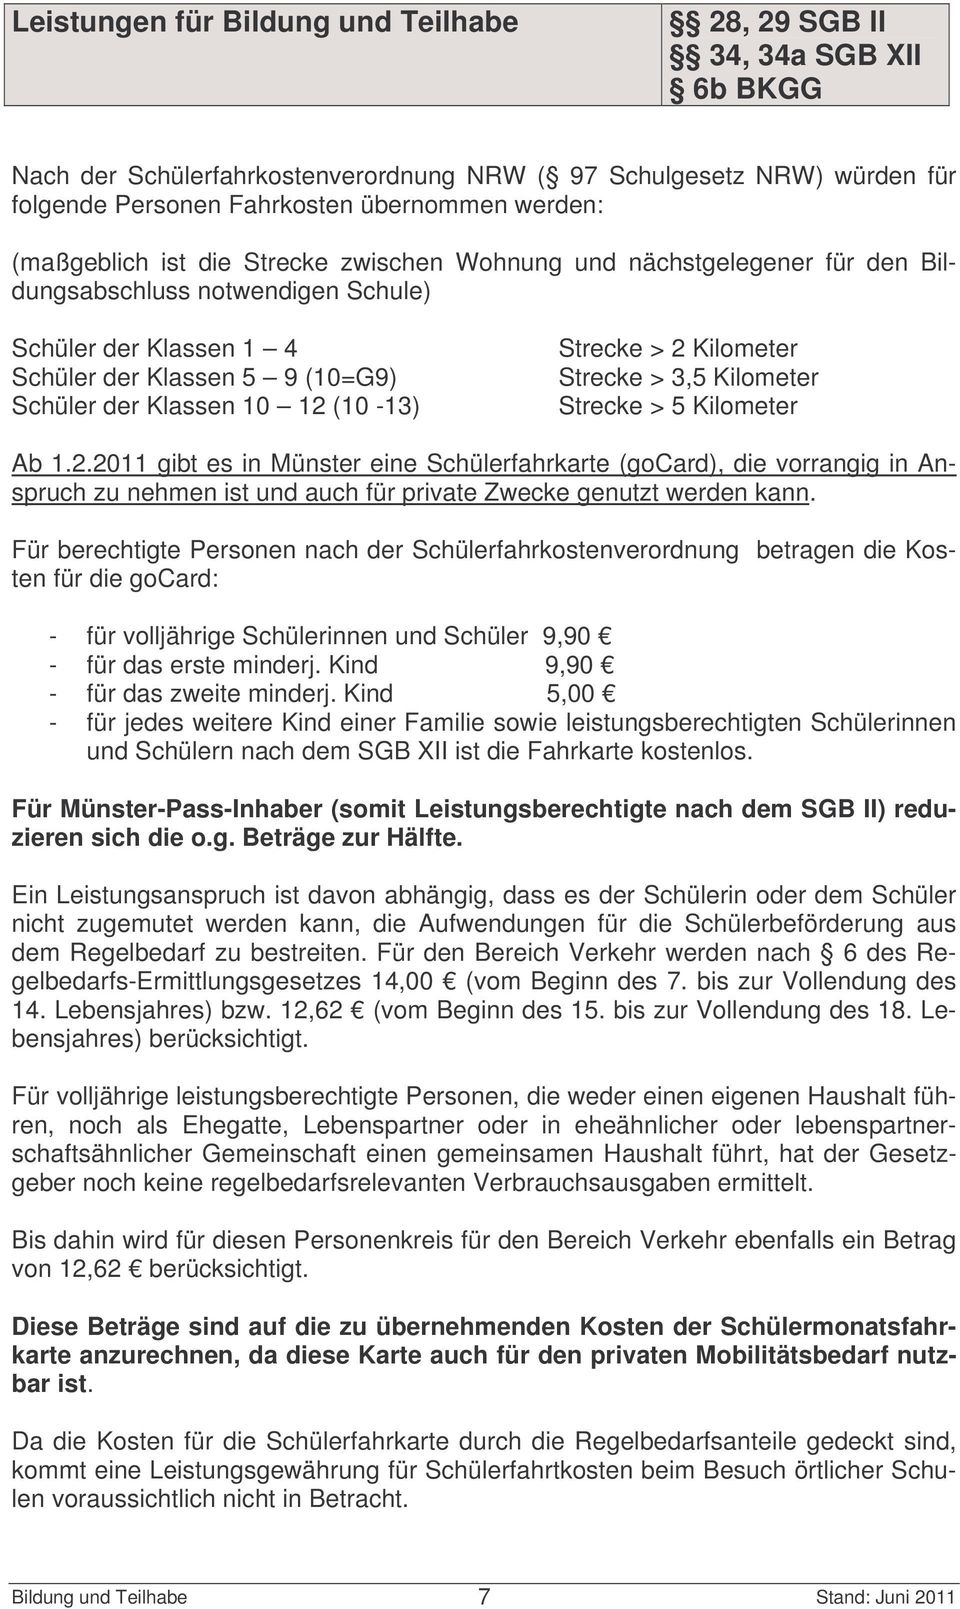 1.2.2011 gibt es in Münster eine Schülerfahrkarte (gocard), die vorrangig in Anspruch zu nehmen ist und auch für private Zwecke genutzt werden kann.